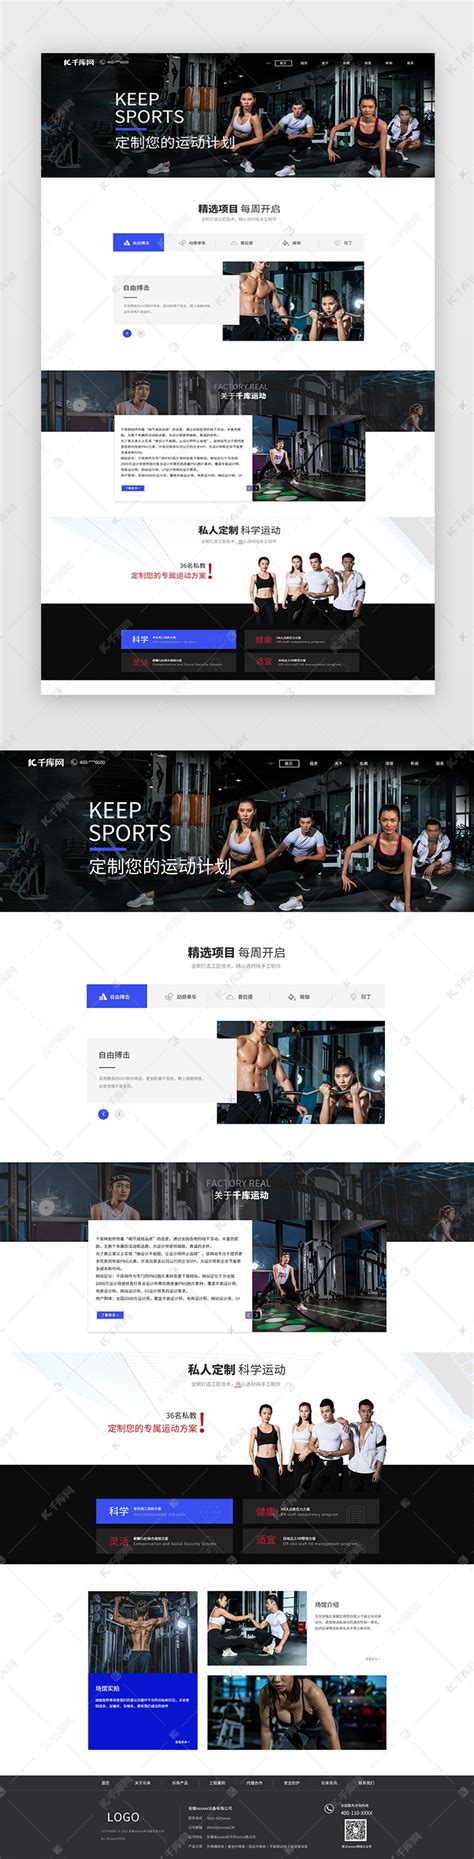 大气炫酷运动风格健身体育网站首页ui界面设计素材-千库网